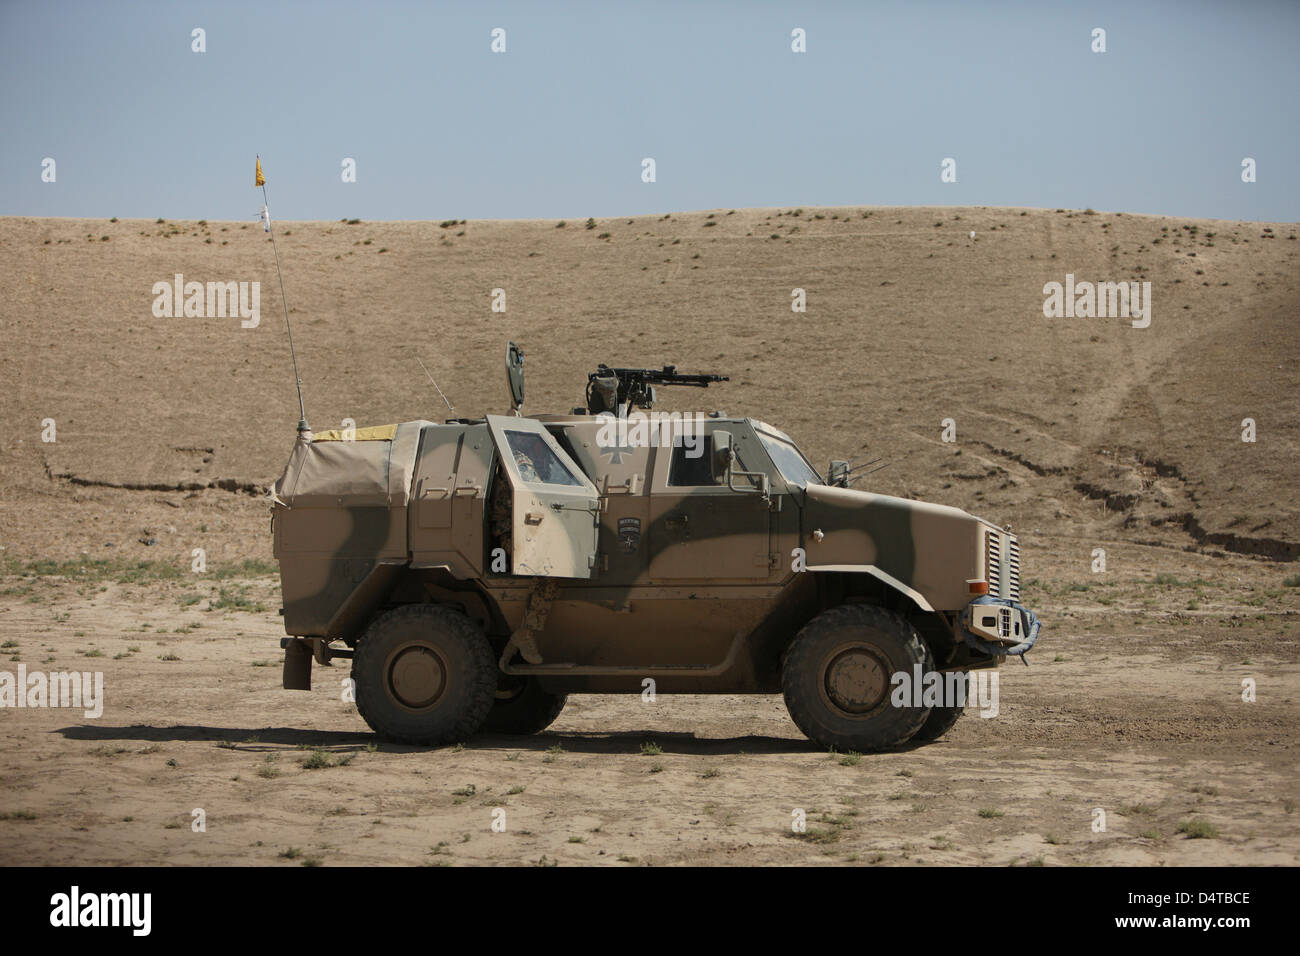 Die deutsche Armee ATF Dingo gepanzerten Fahrzeug Stockfotografie - Alamy